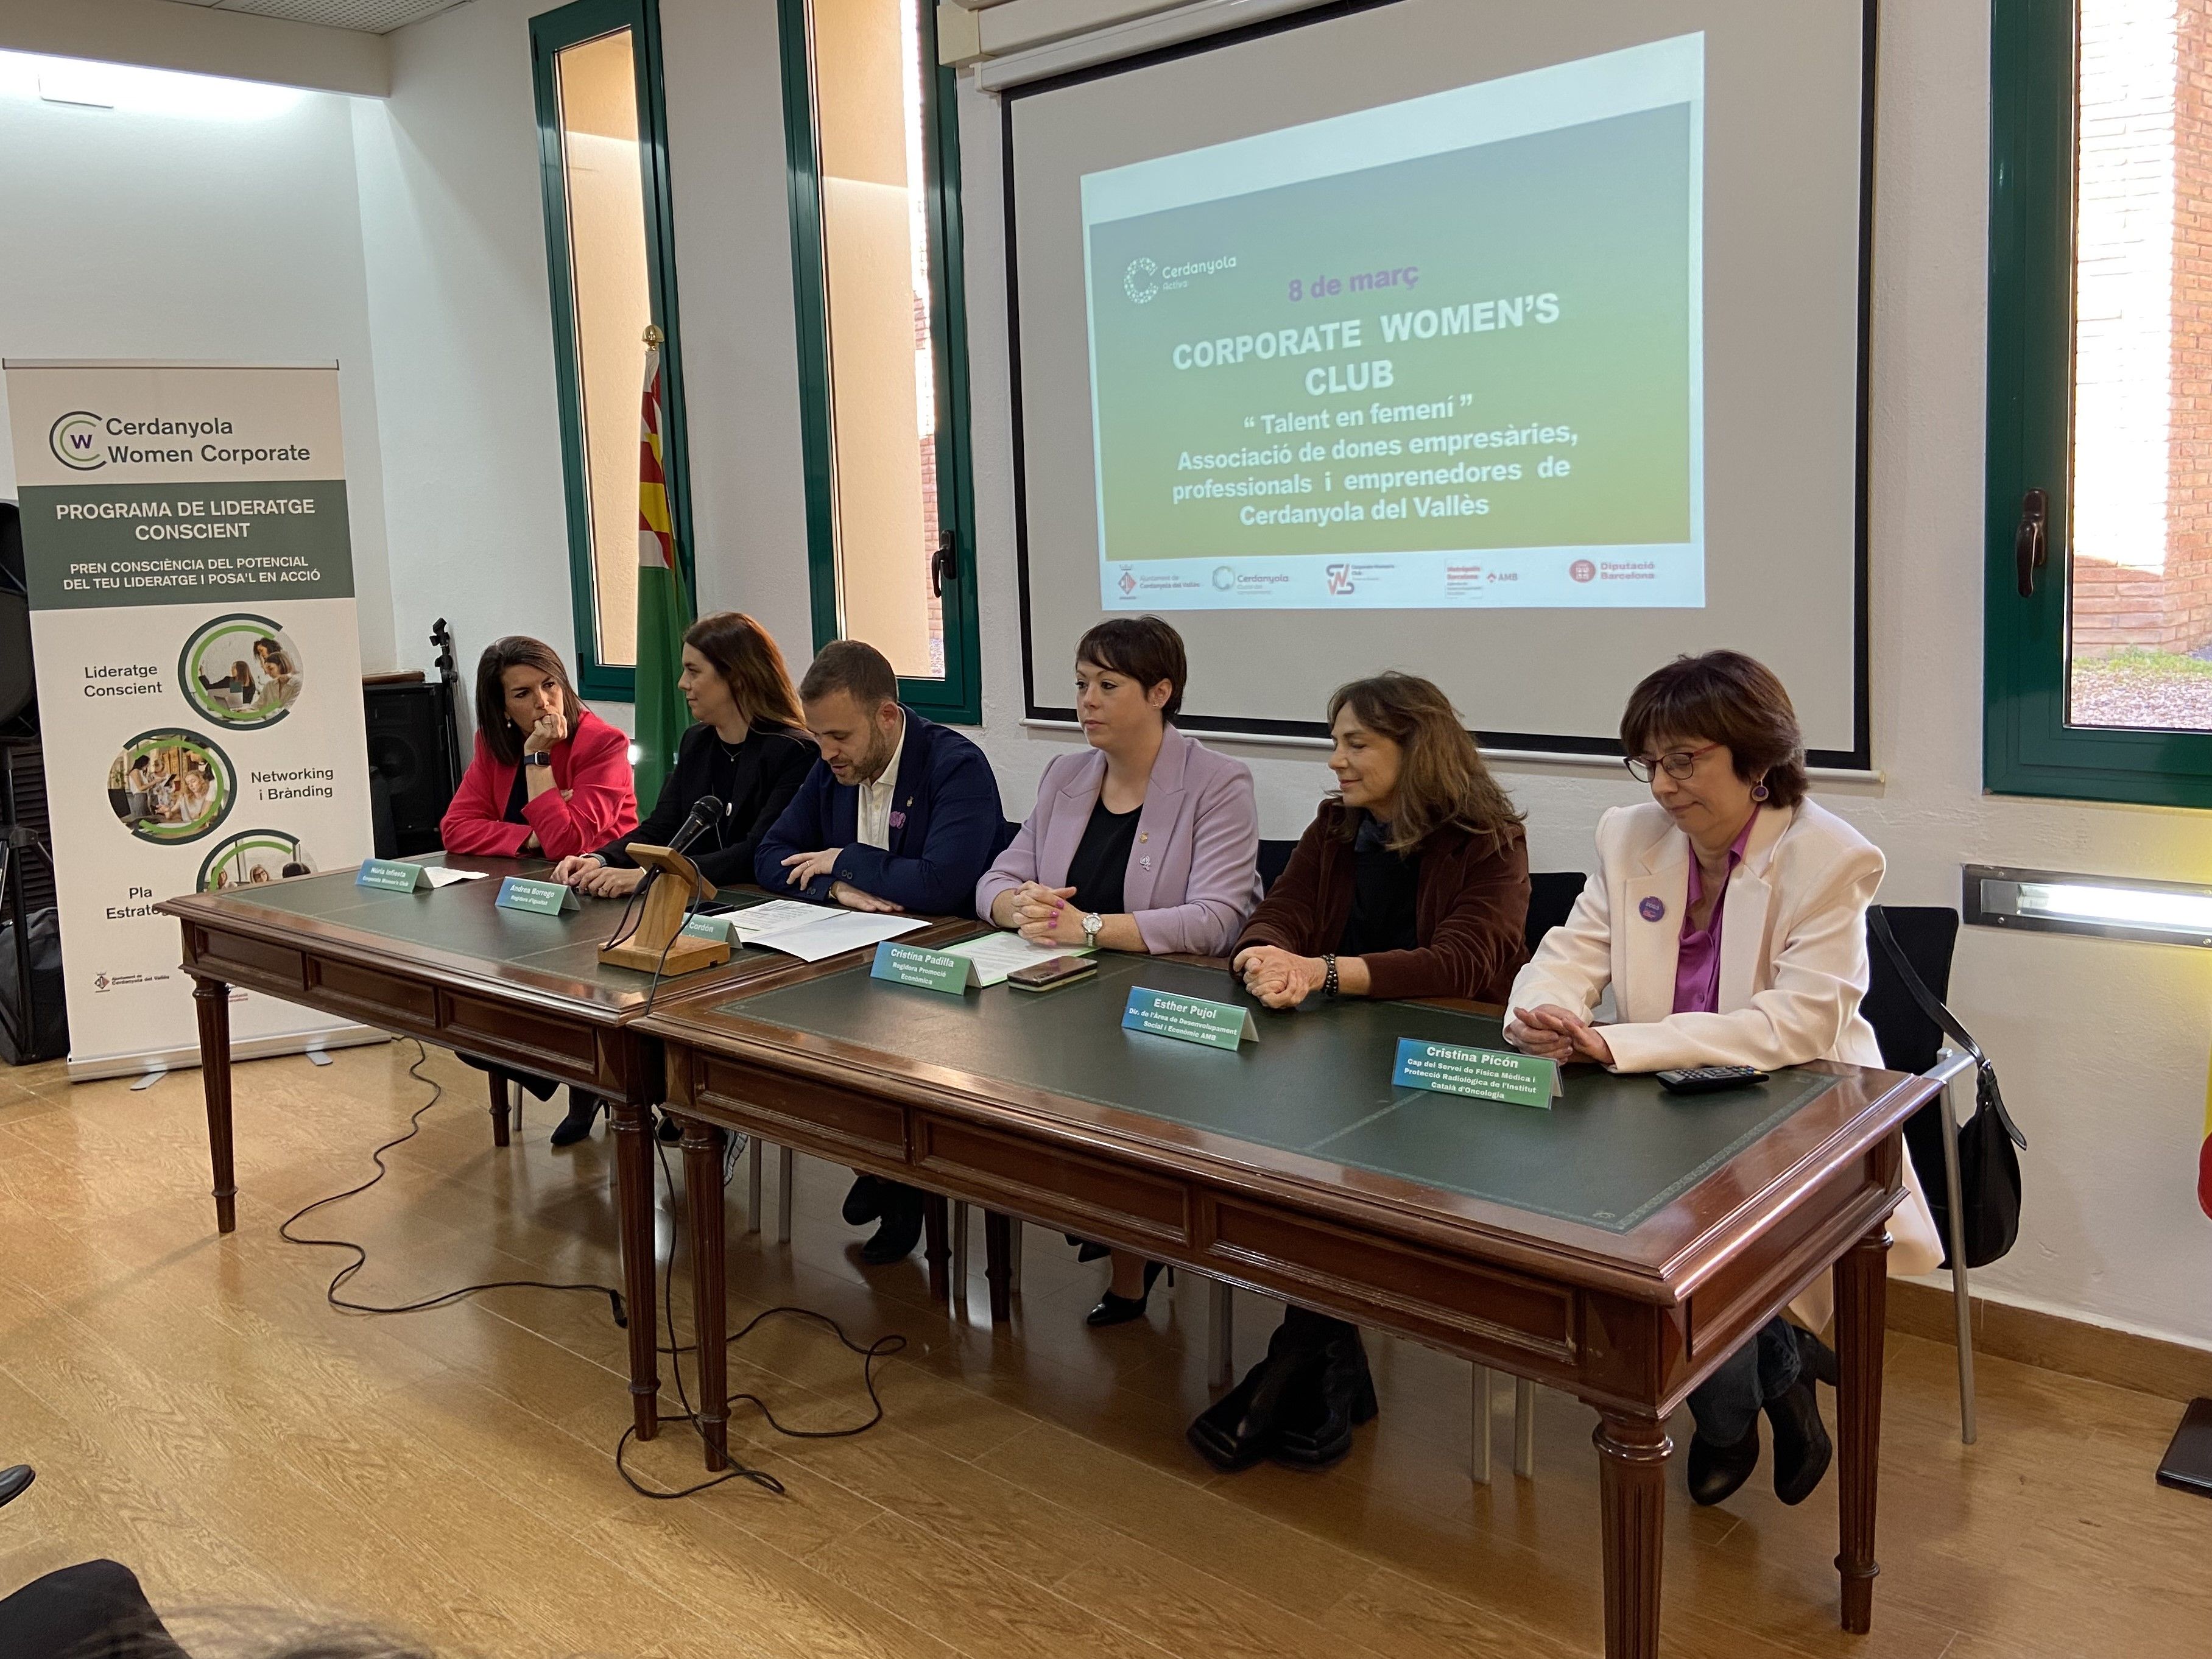 Presentació de l'associació Corporate Women's Club a la Masia Can Serraparera. FOTO: Nora MO